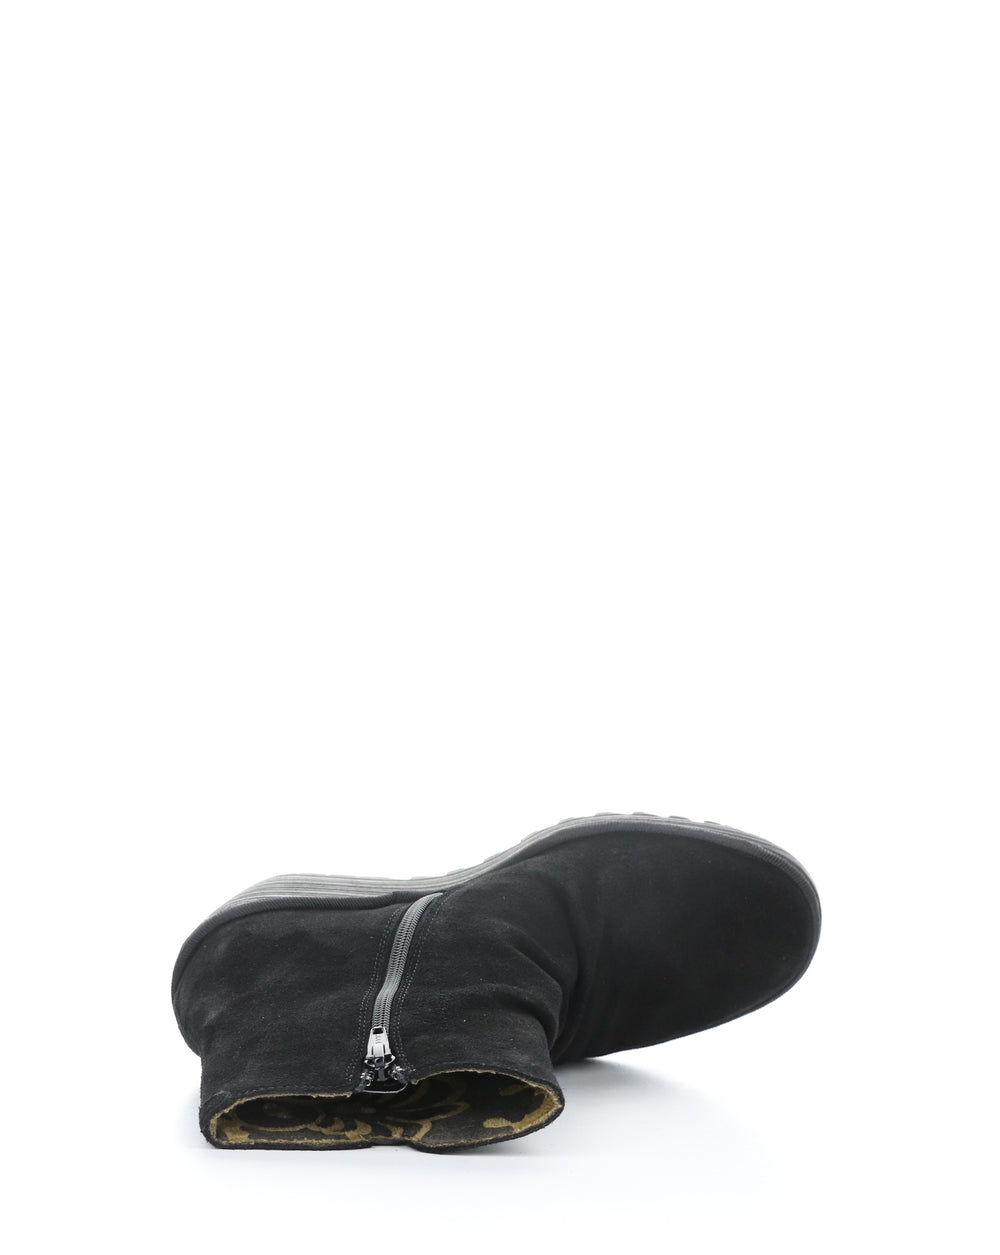 YOPA461FLY 001 BLACK Round Toe Boots